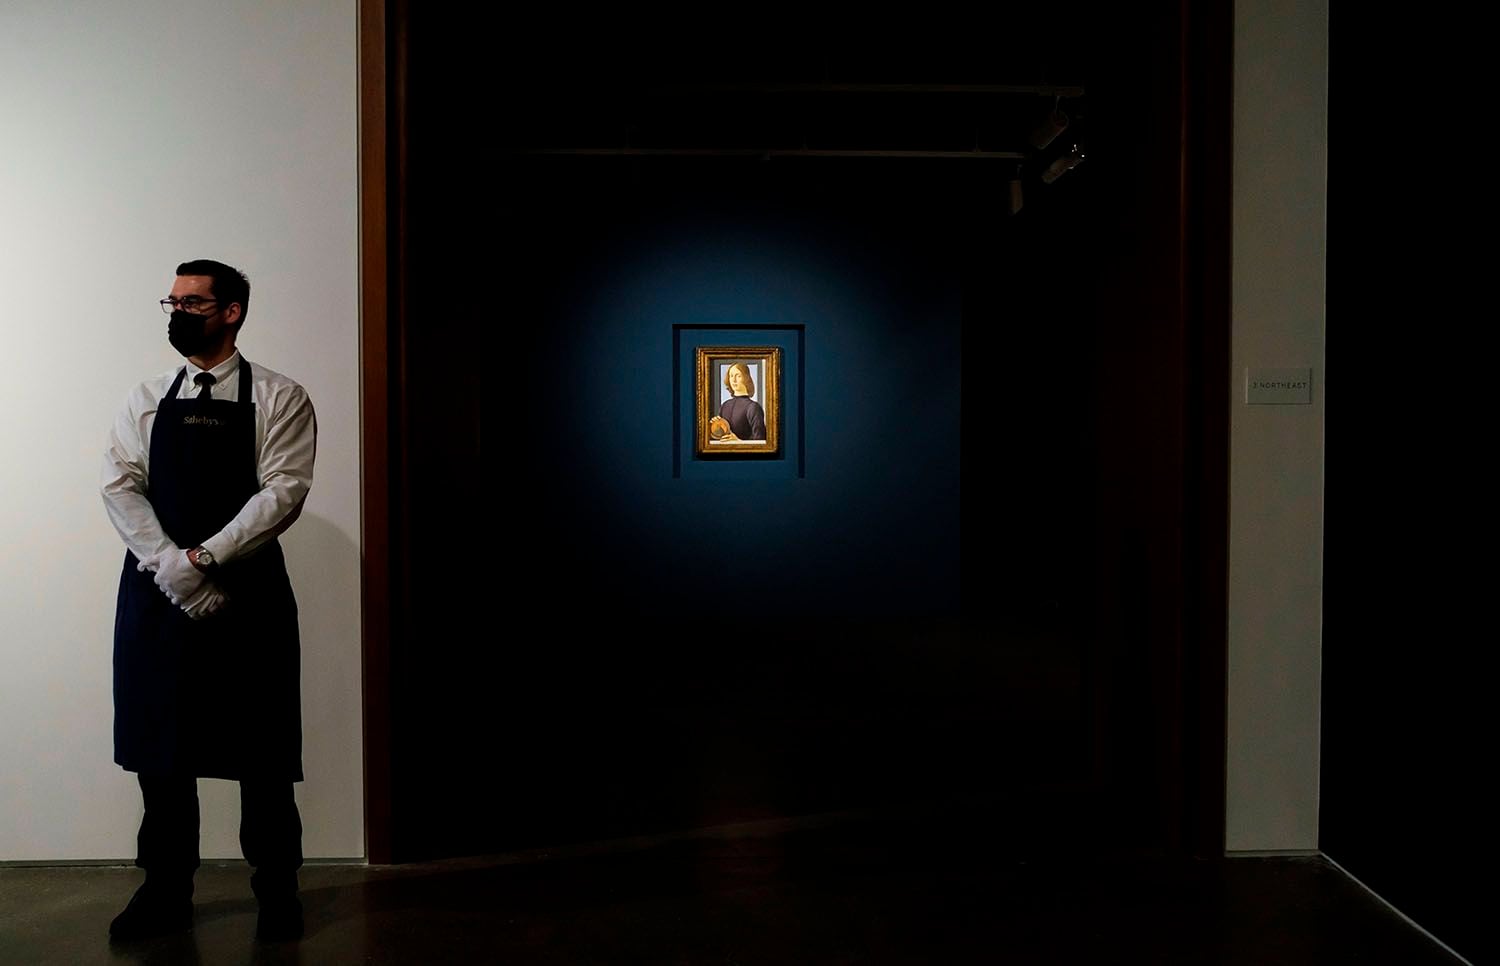 Vista de la obra "Young Man Holding a Roundel" (Hombre joven sujetando un medallón) del artista, expueta por la casa de subastas Sotheby's, este 22 de enero de 2021, en Nueva York.EFE/Justin Lane
